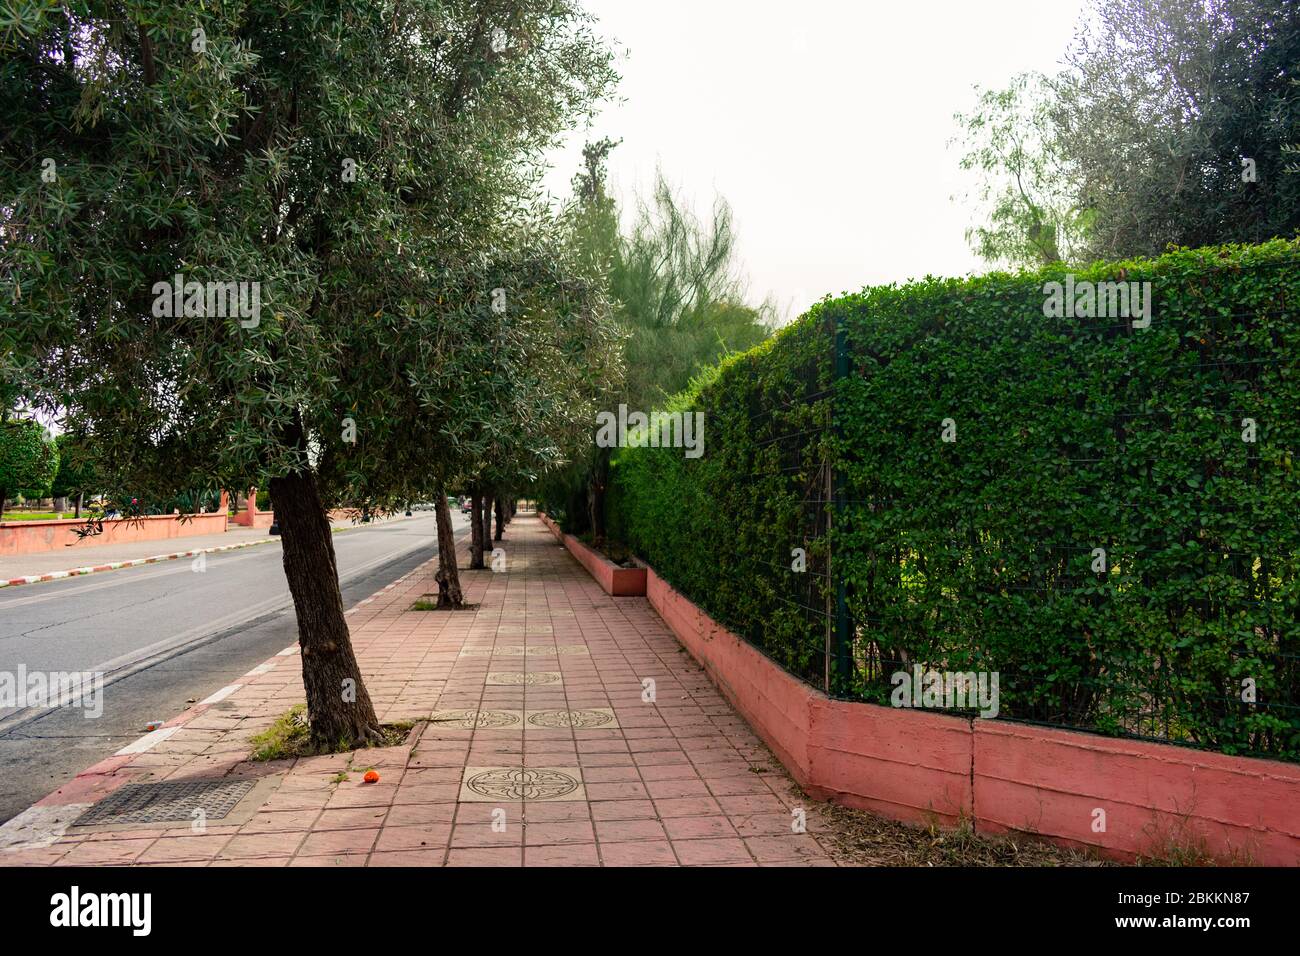 Trottoir bordé d'arbres verts et d'arbustes au bord d'une rue à Marrakech Maroc Banque D'Images